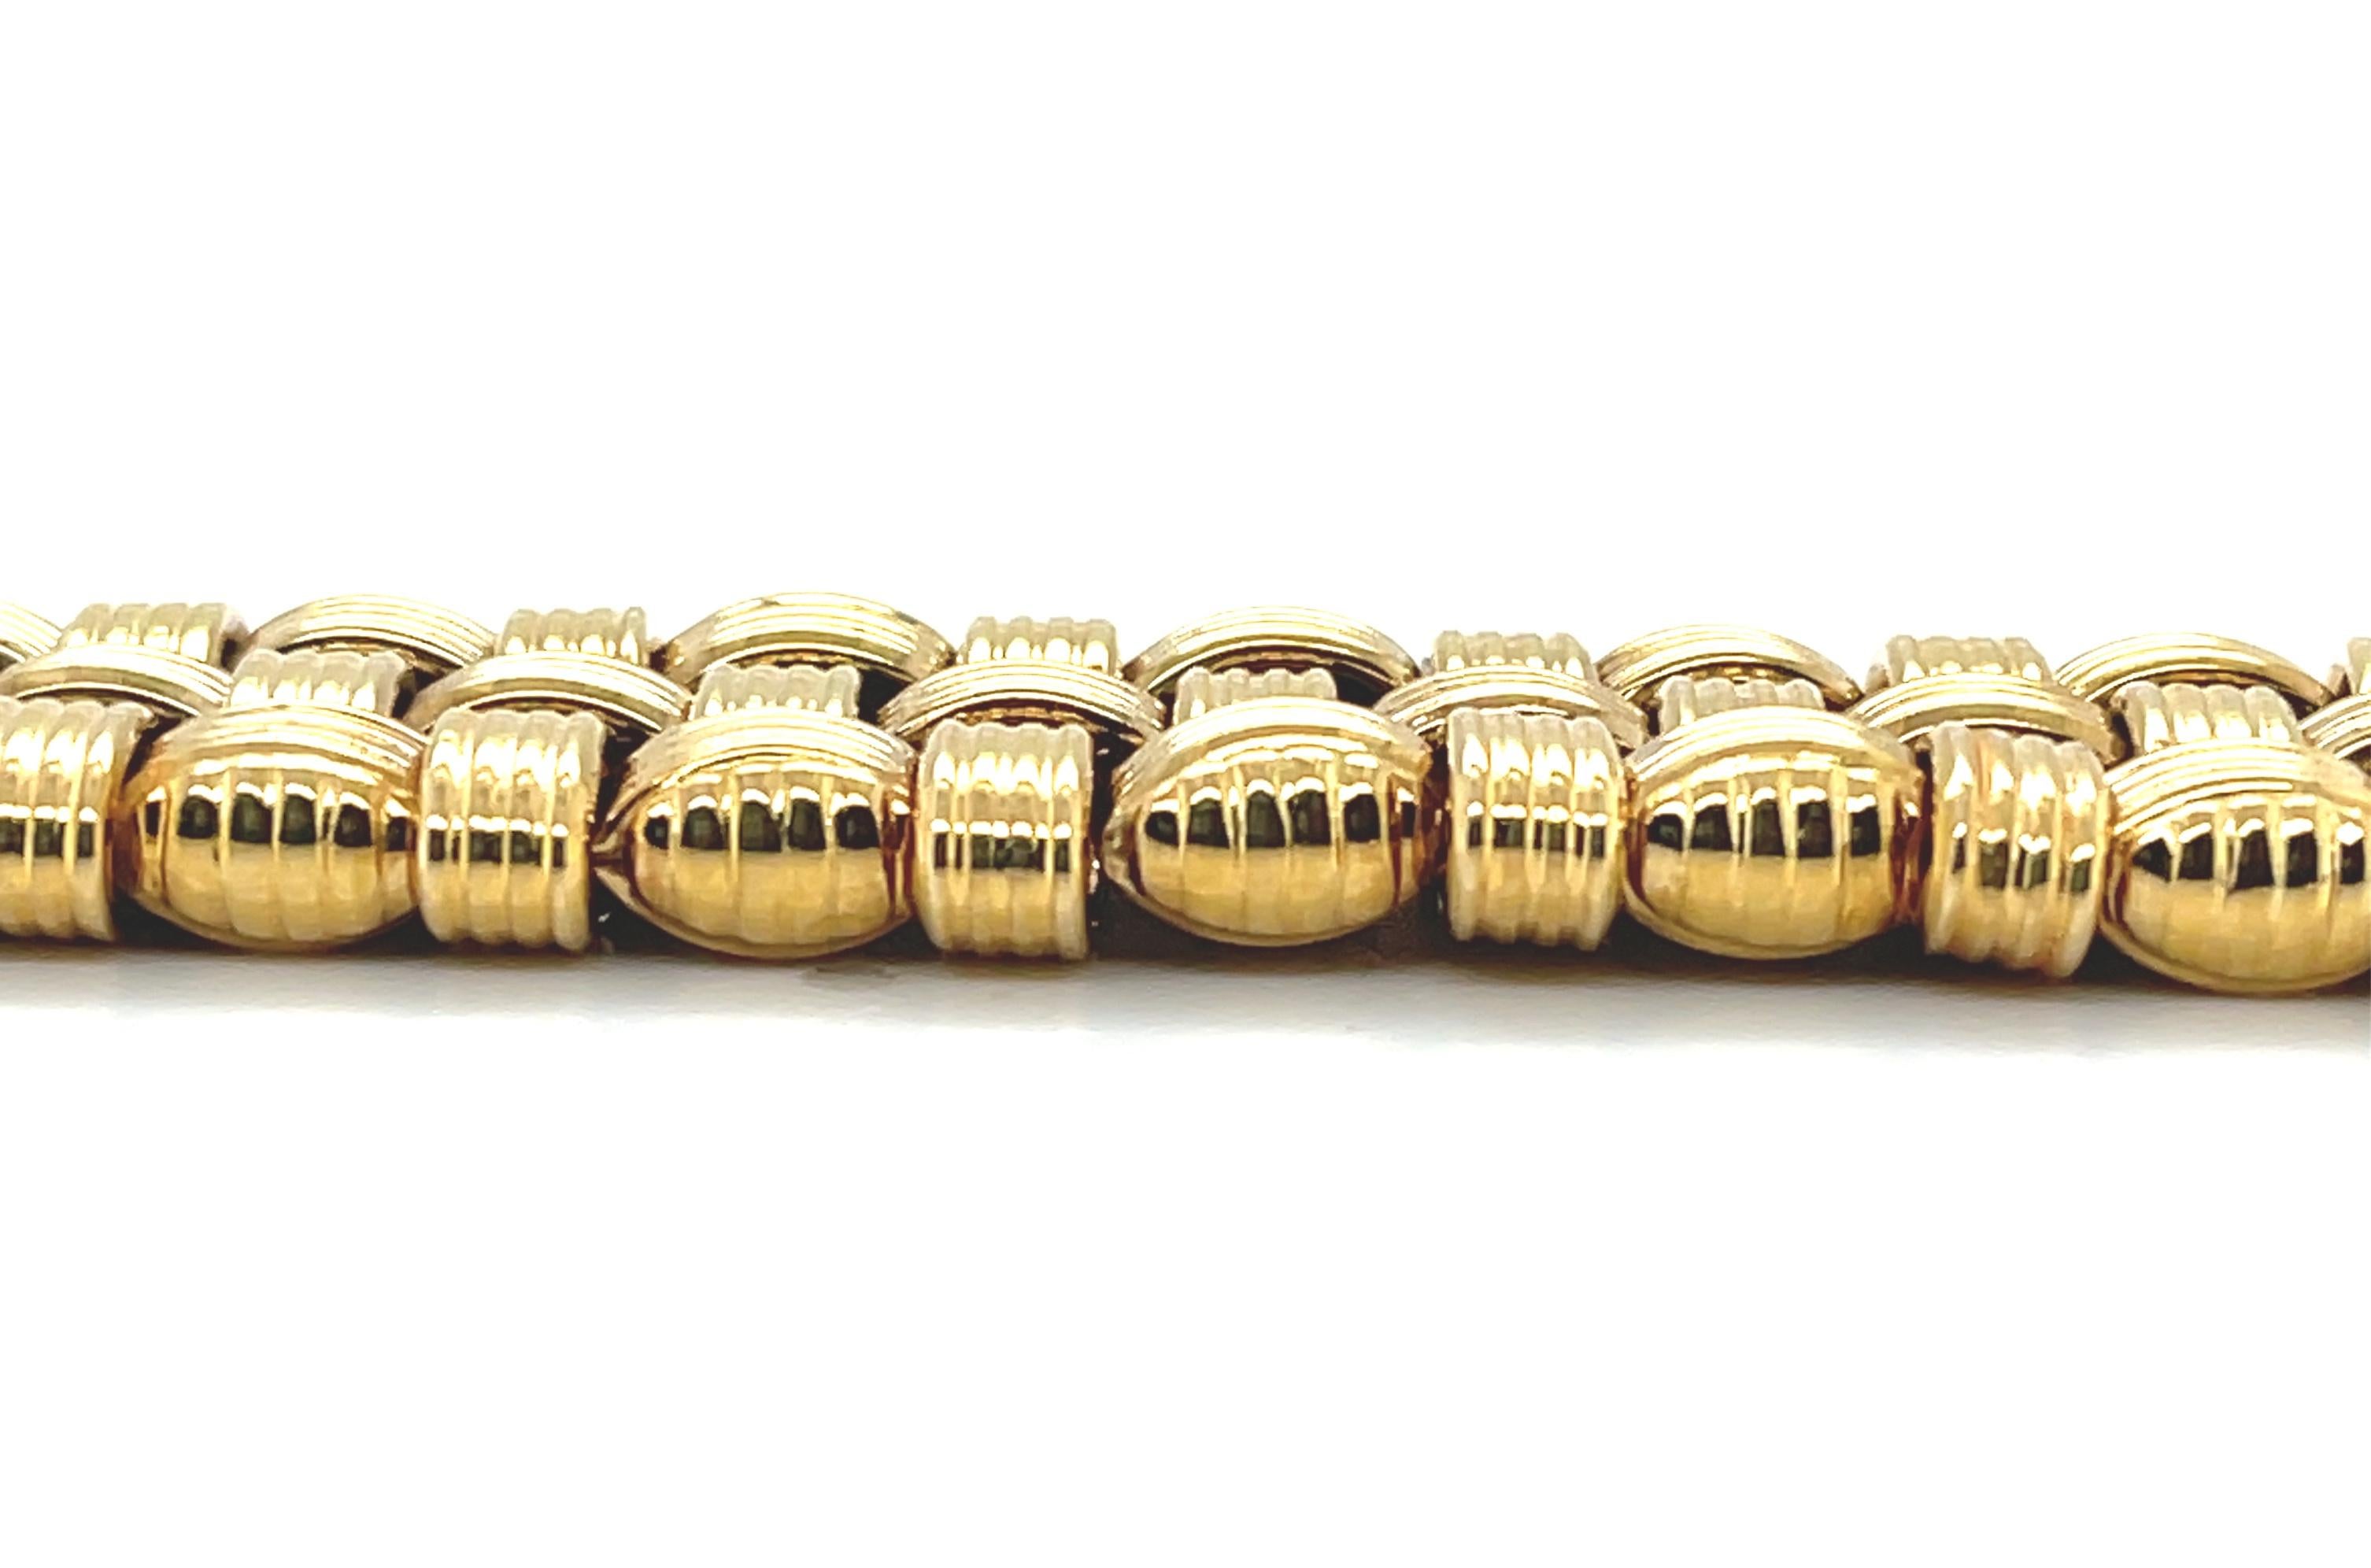  Italian Basketweave Bracelet in 14k Yellow Gold For Sale 2